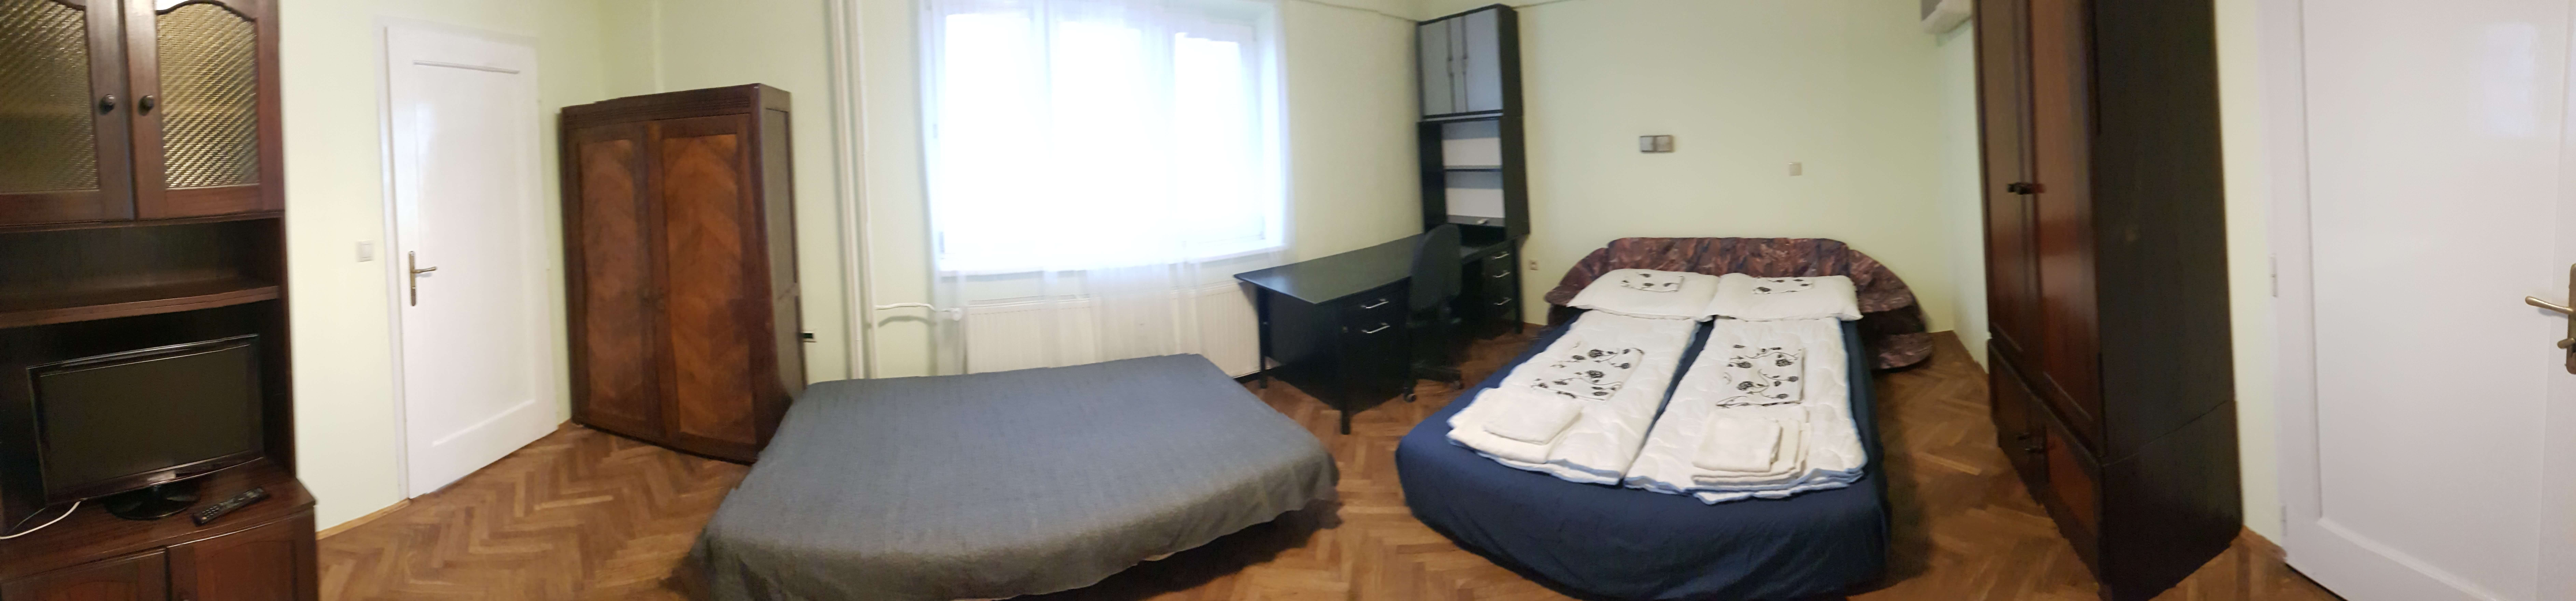 Prenajaté: Prenájom jednej izby v 2 izb. byte, staré mesto, Šancová ulica, Bratislava, 80m2, zariadený-18